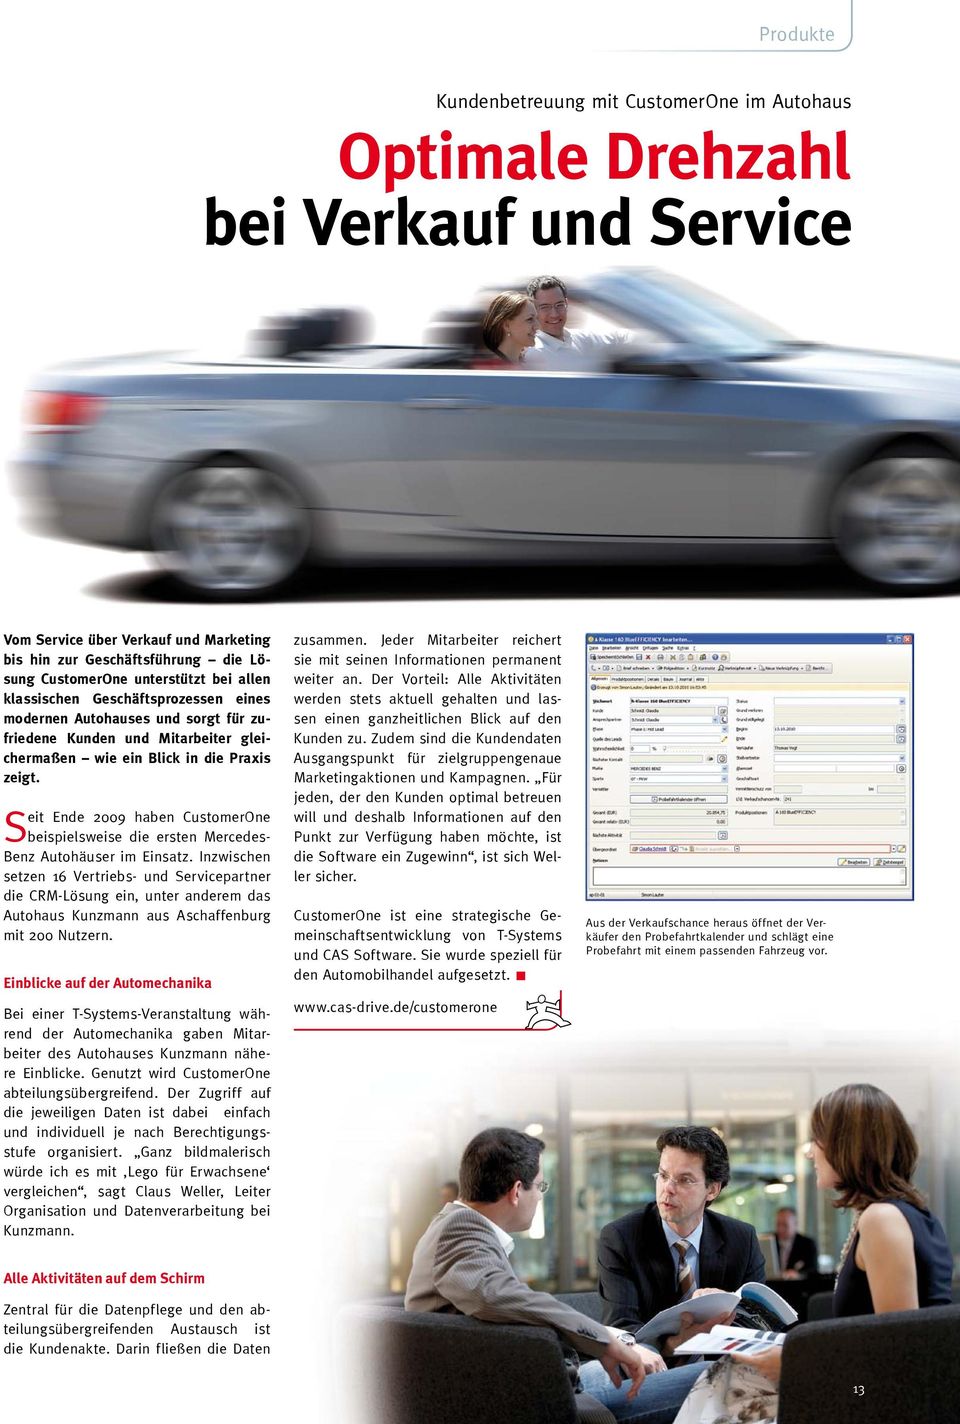 Seit Ende 2009 haben CustomerOne beispielsweise die ersten Mercedes- Benz Autohäuser im Einsatz.